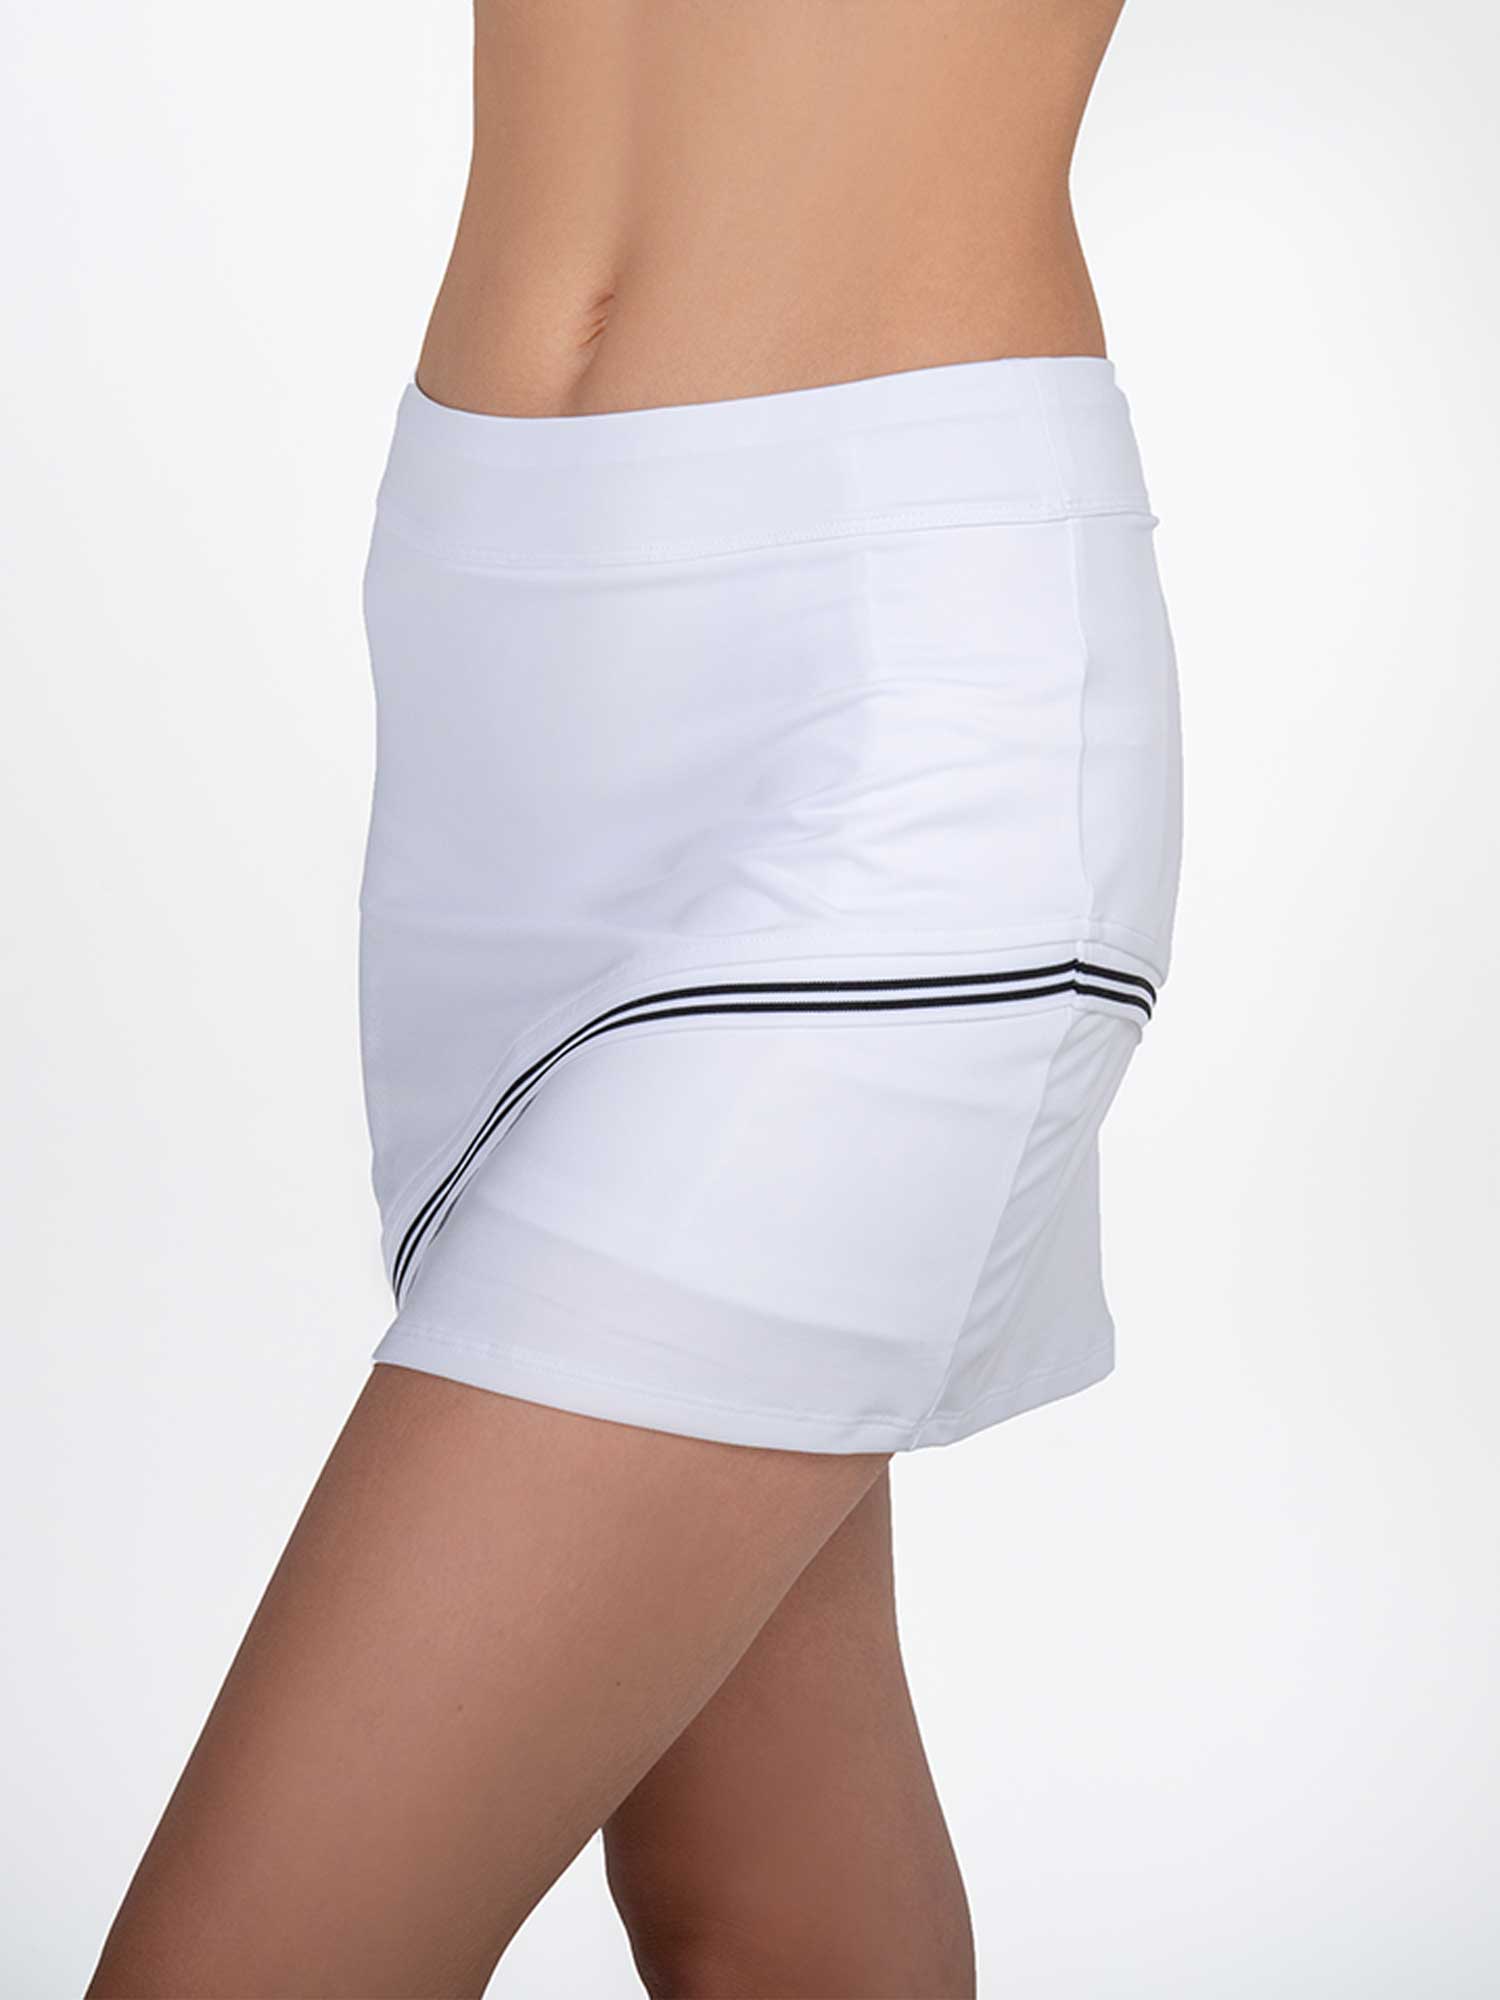 Chloe 15" Asymmetrical Skirt - White/Black